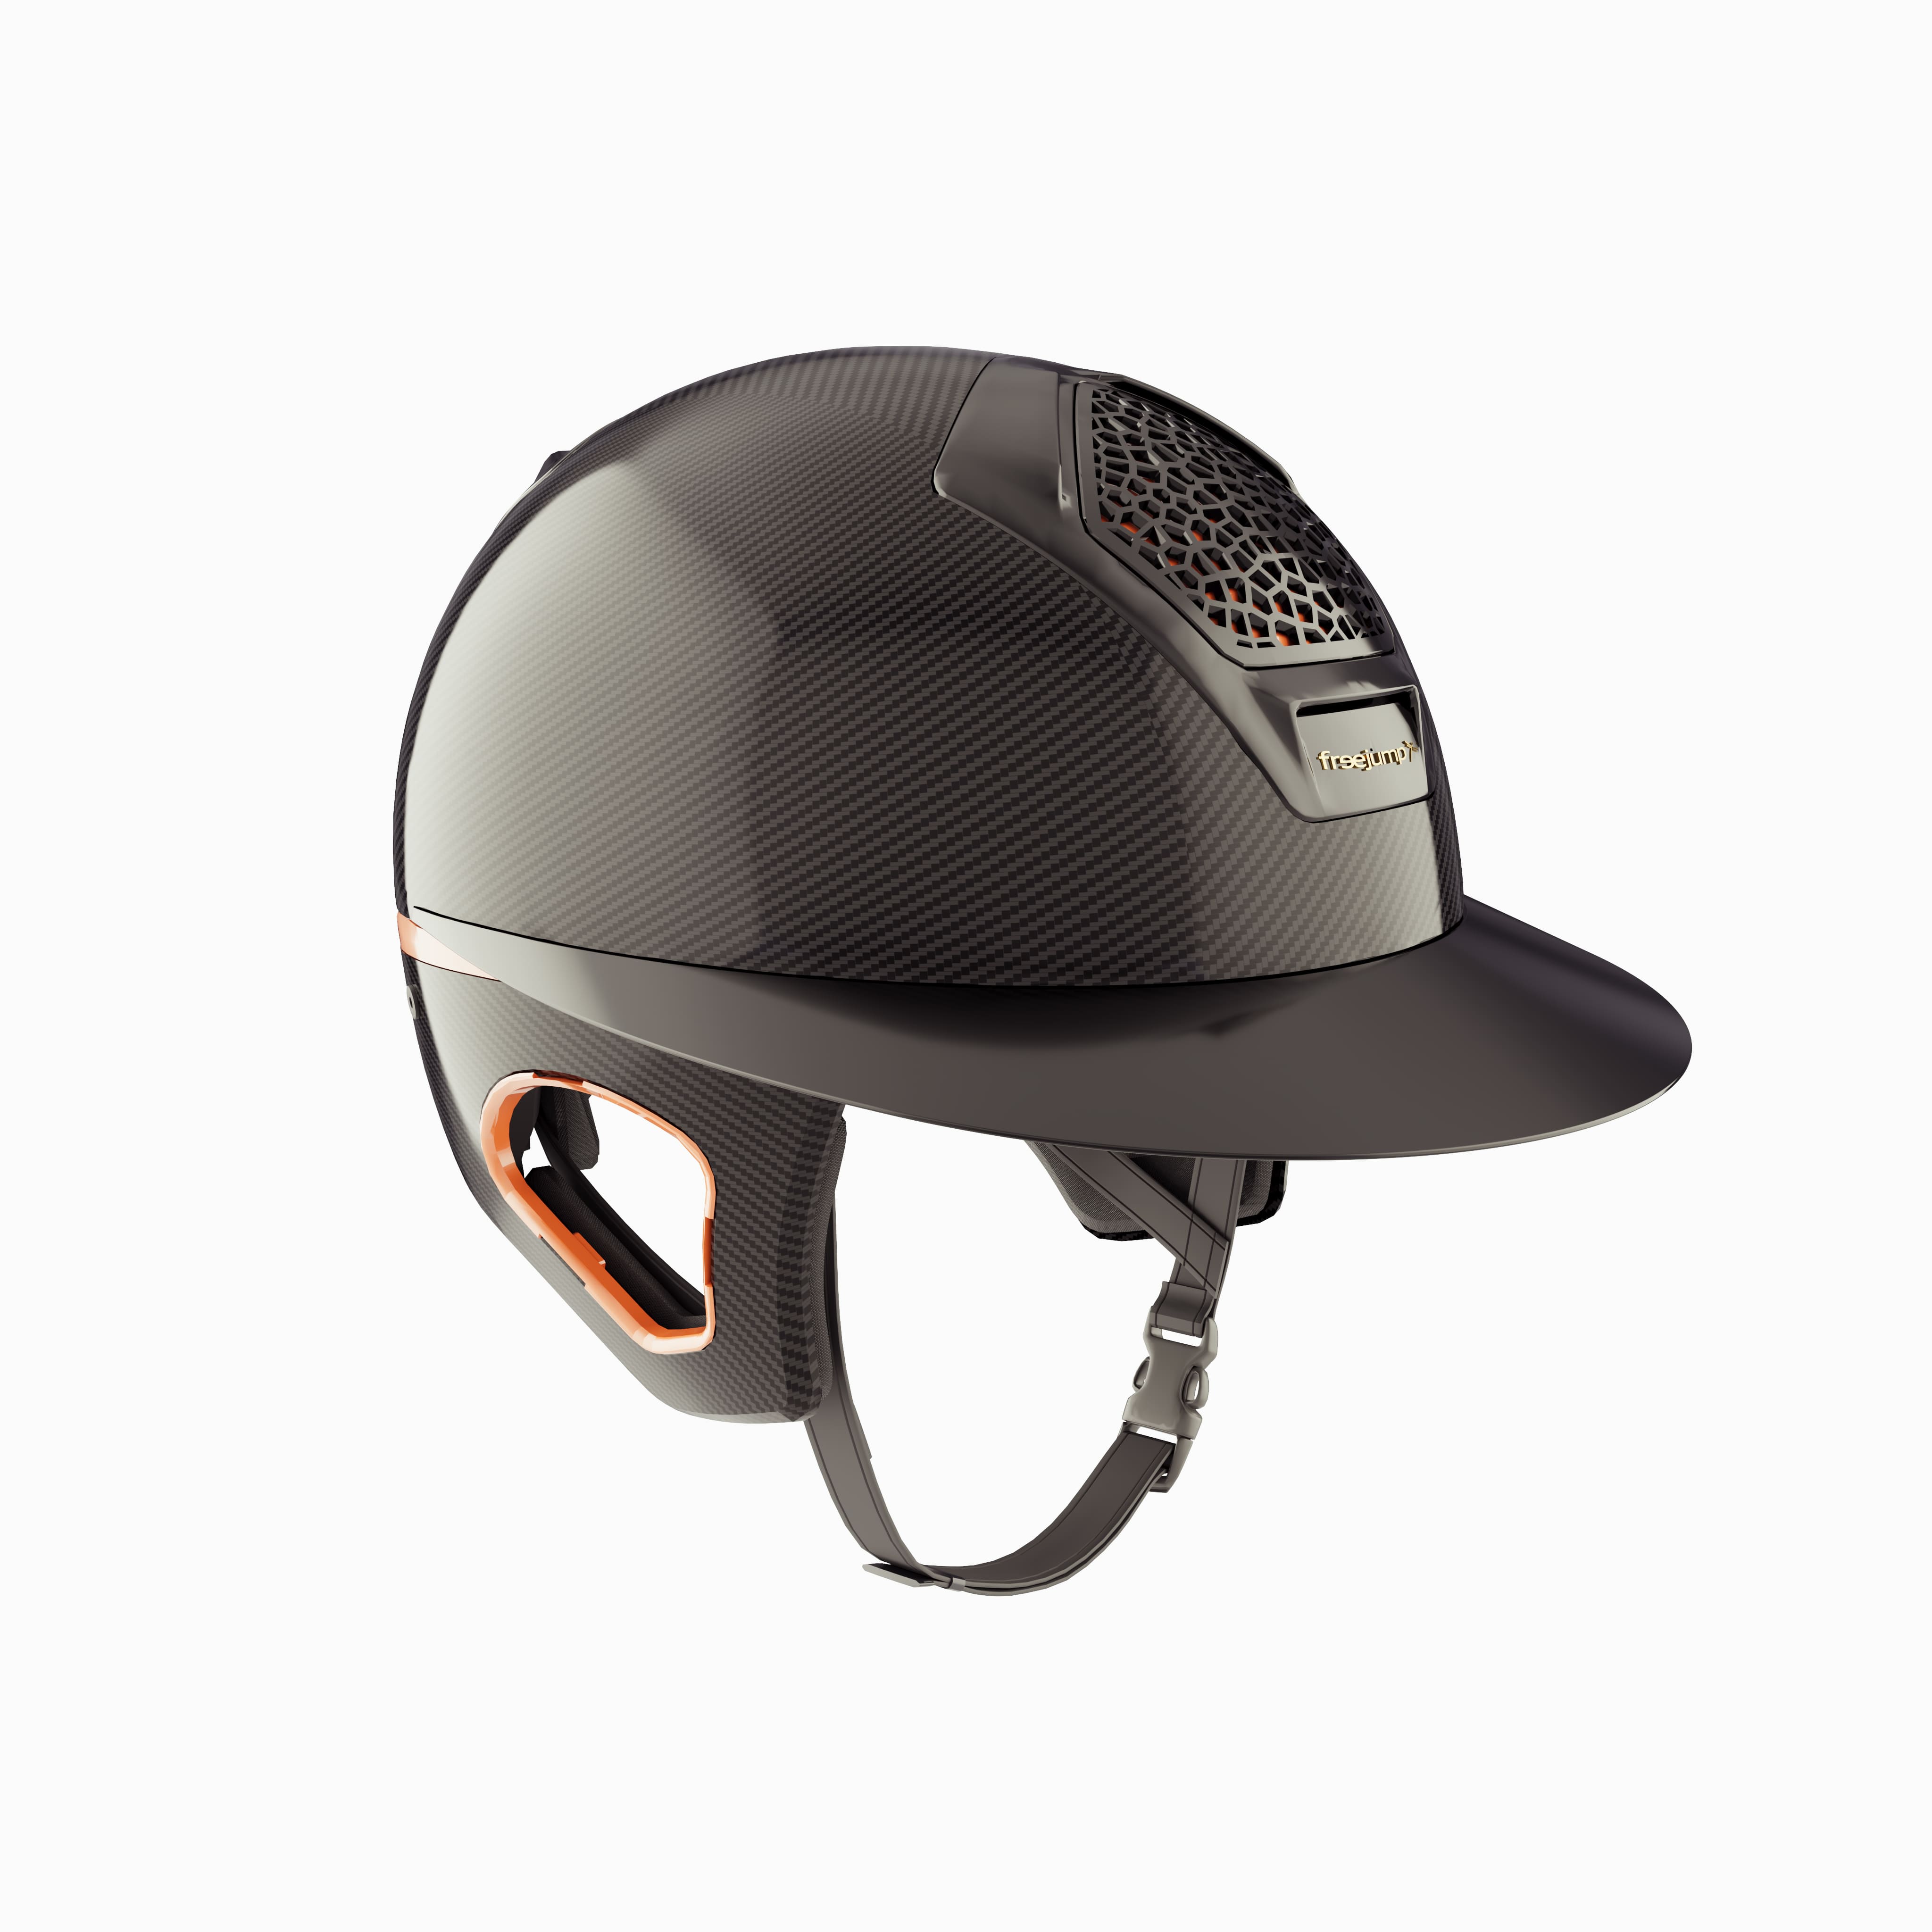 Voronoï Carbon Helmet With Temple Protection - Black/Bronze